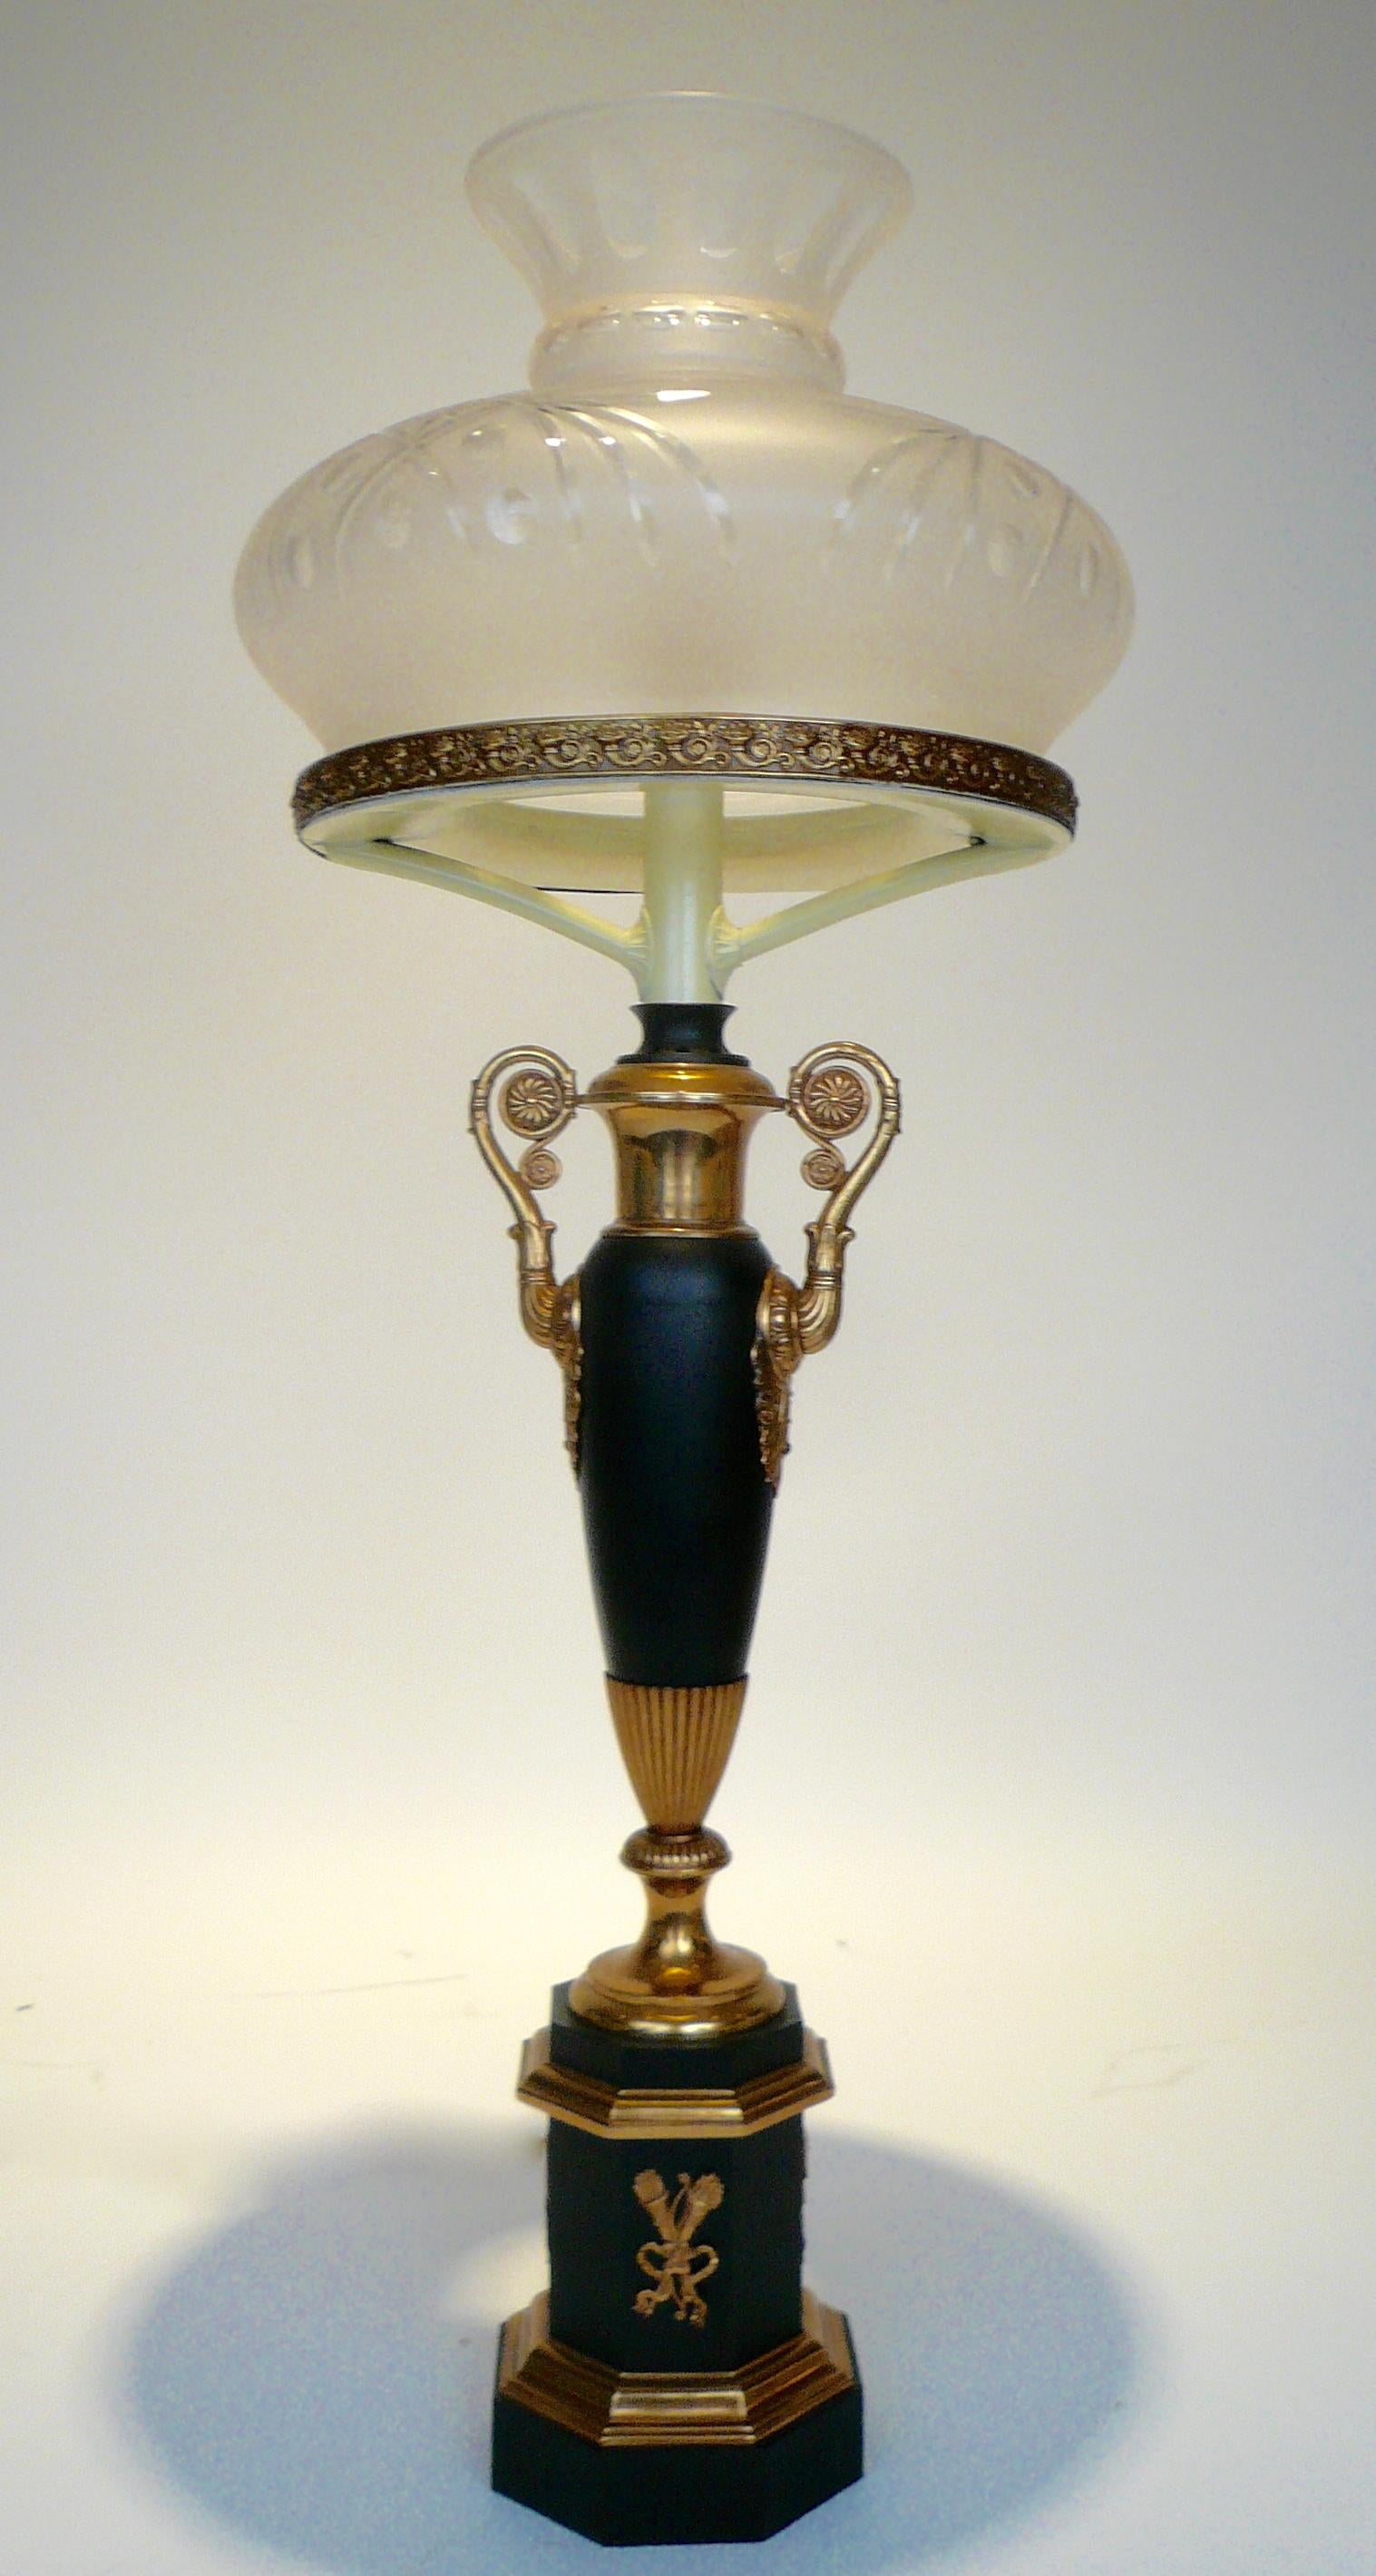 Diese hübsche Sinumbra-Lampe in Urnenform hat noch das ursprüngliche Ölreservoir. Es zeigt neoklassizistische Motive wie Füllhorn, Akanthusblätter und Blumenrosetten.
 